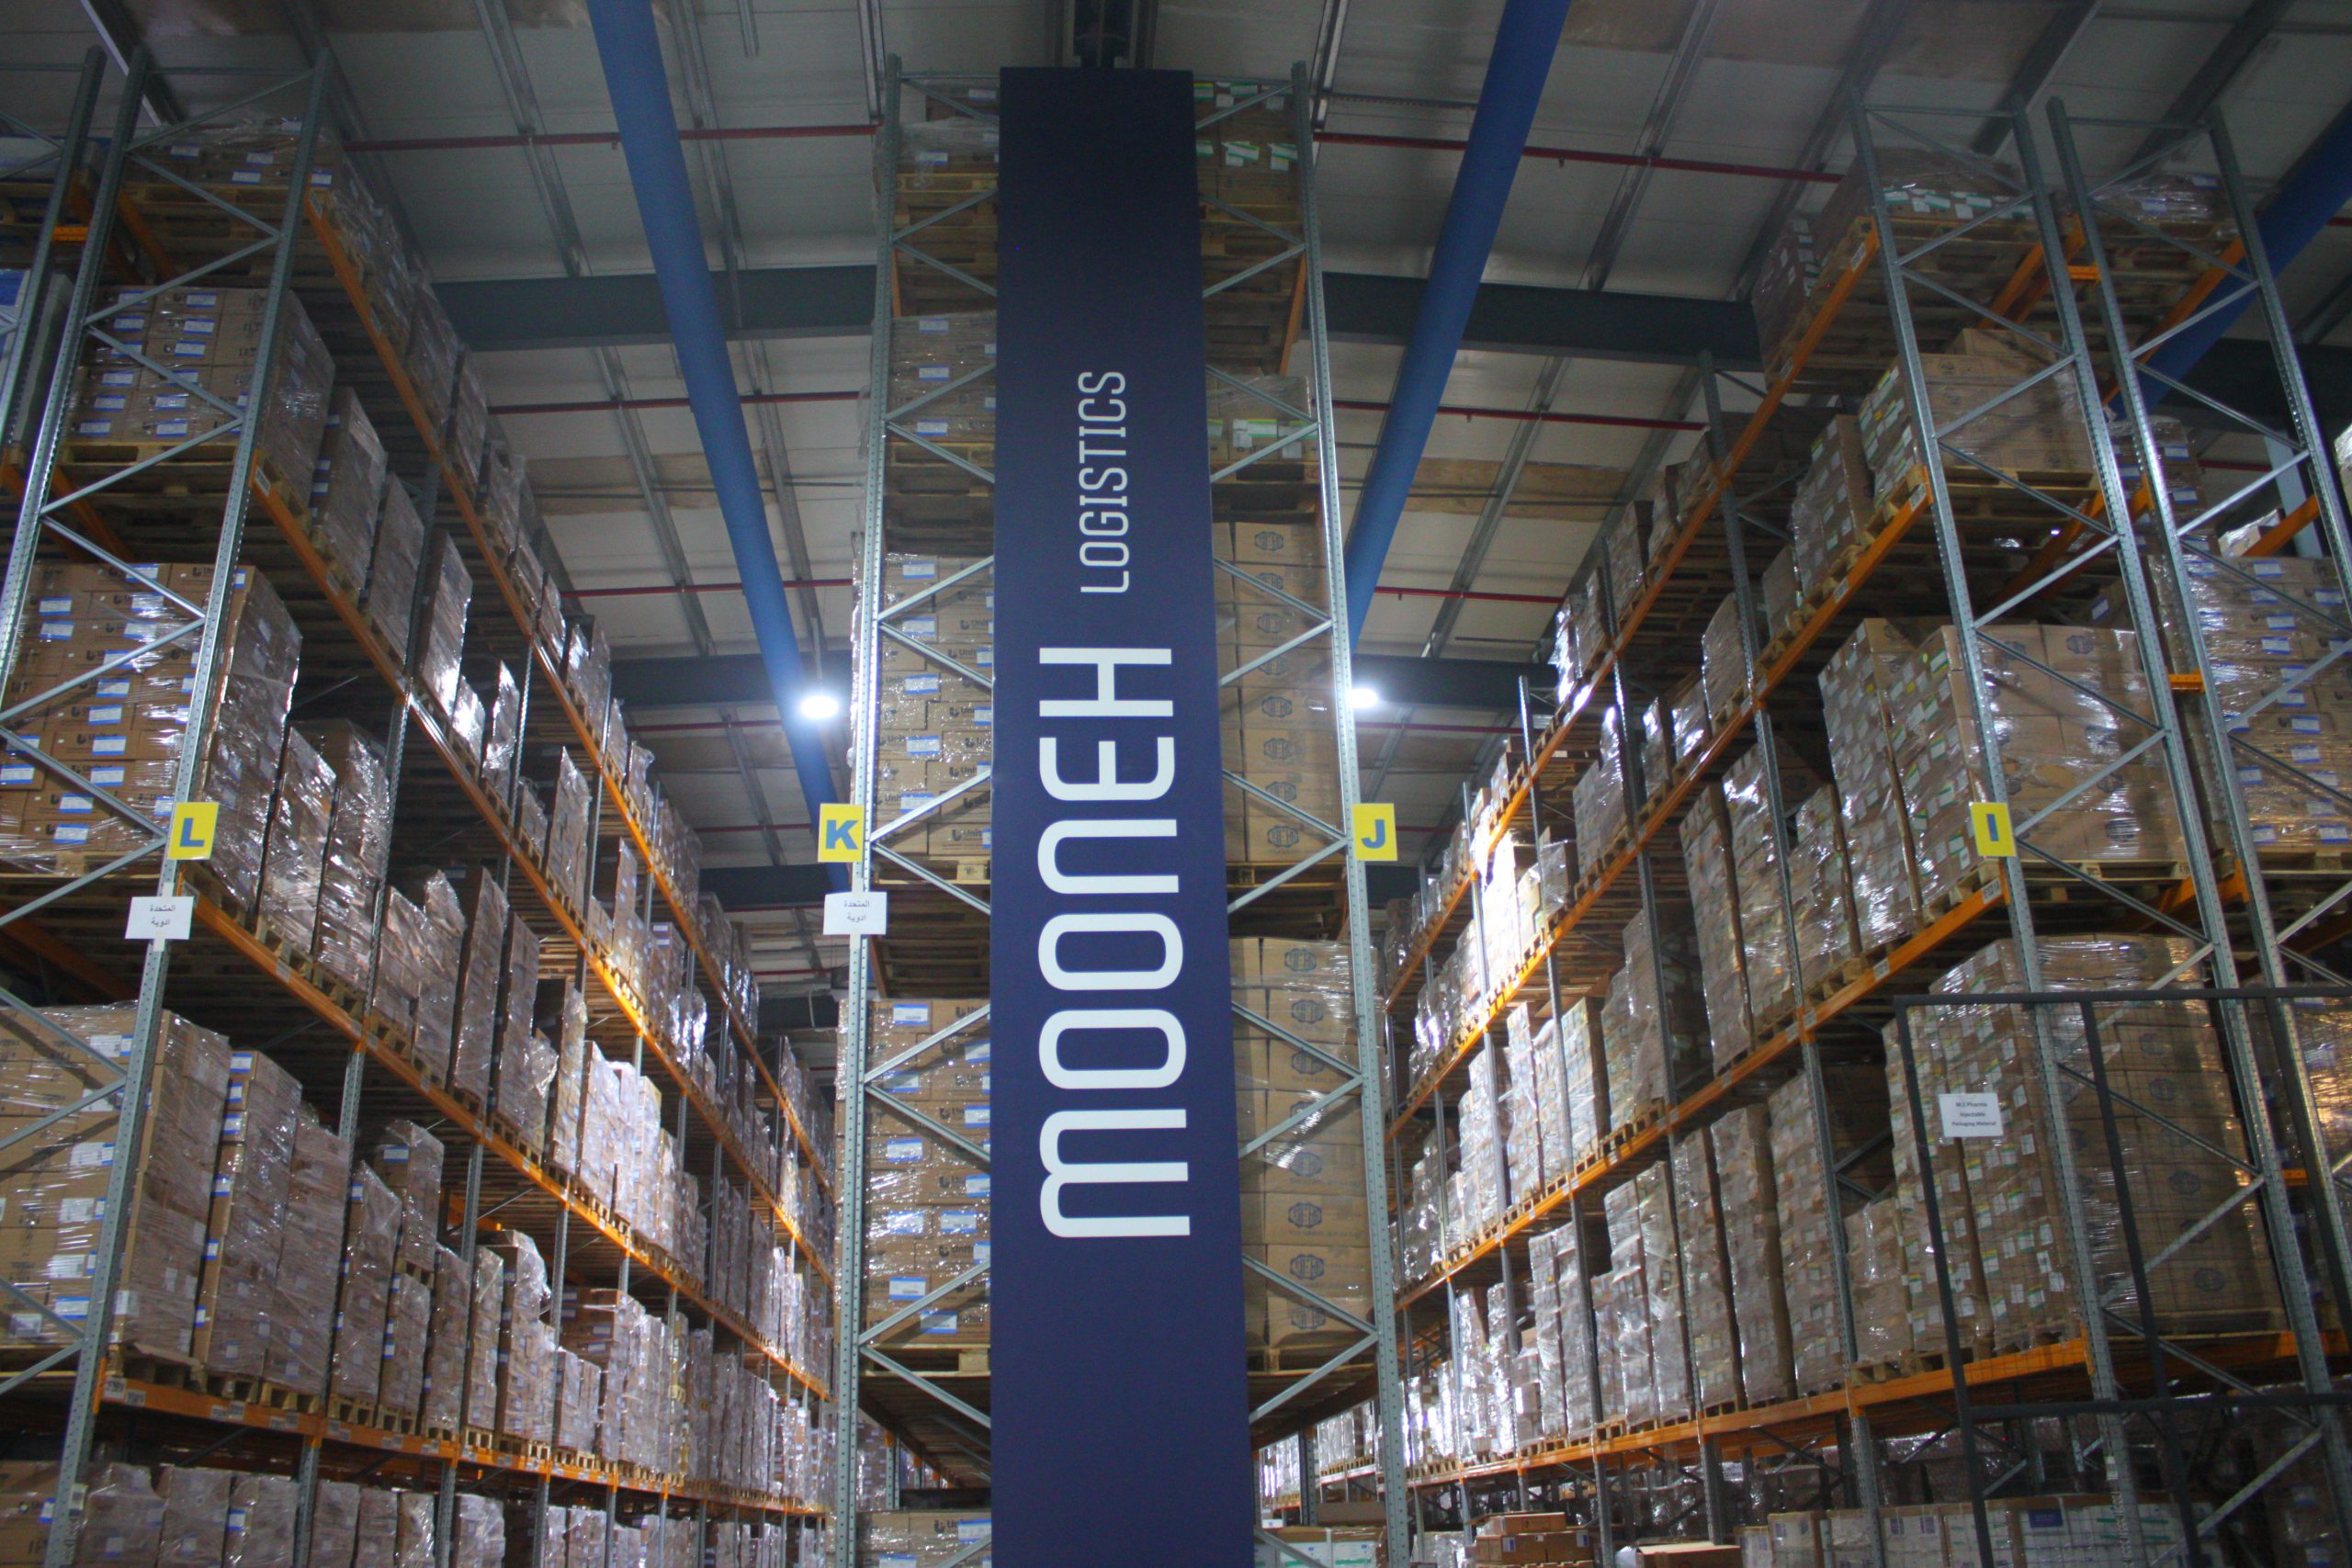 Mooneh Warehousing & Logistics